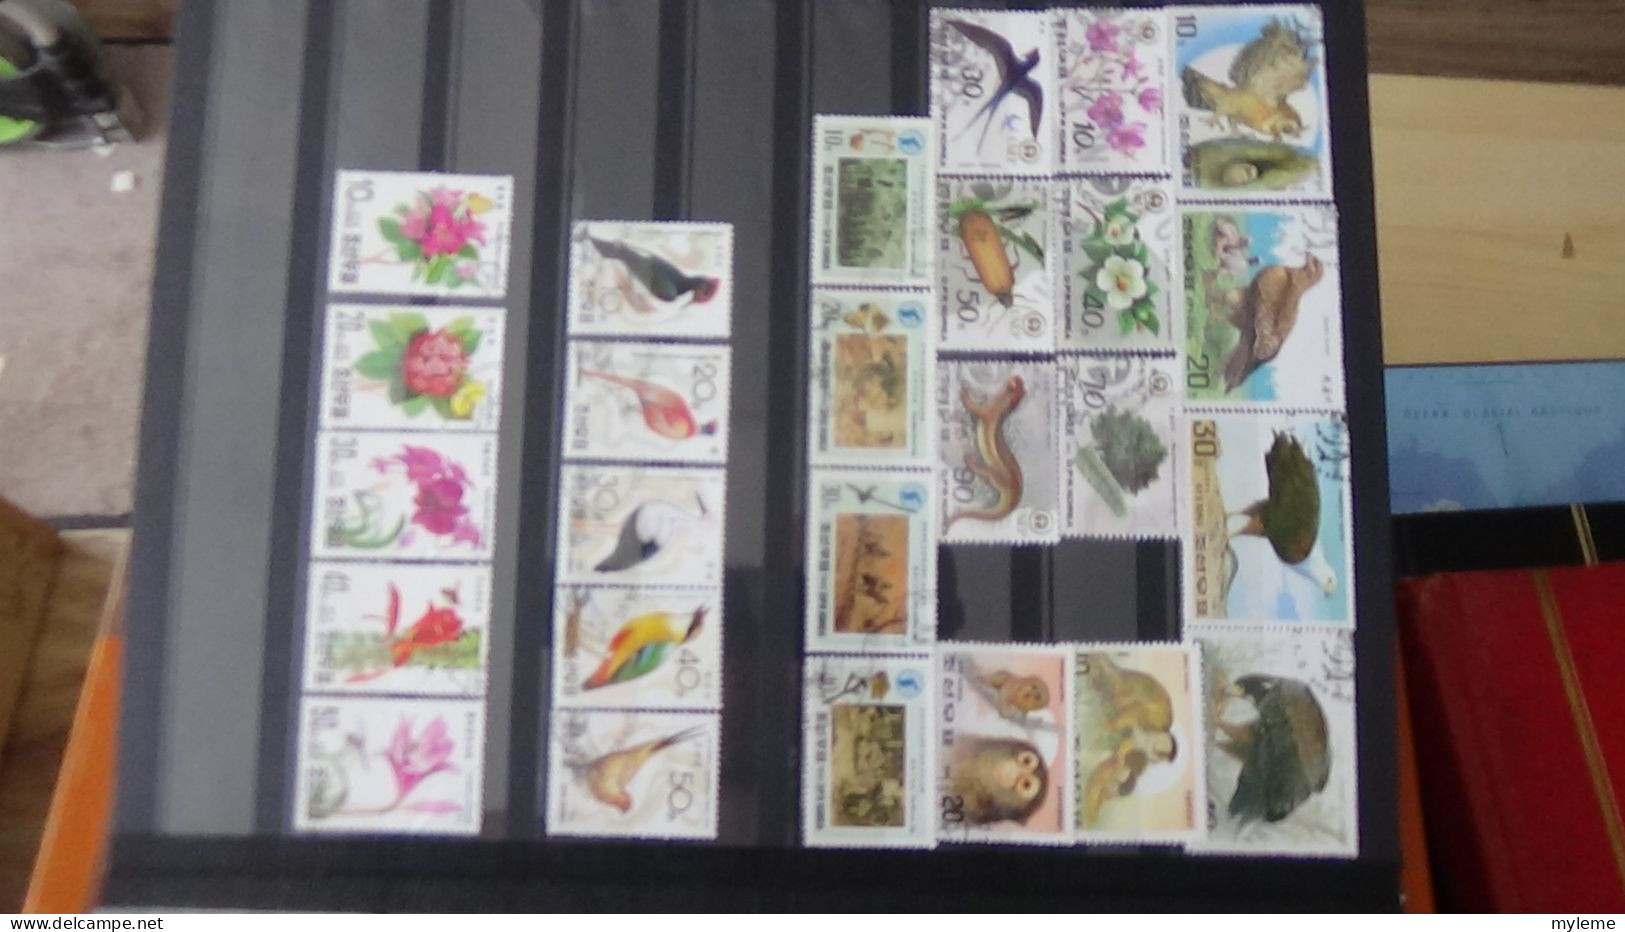 BF40 Ensemble de timbres de divers pays + France N° 257A ** surcharge garantie authentique Cote 1650 euros